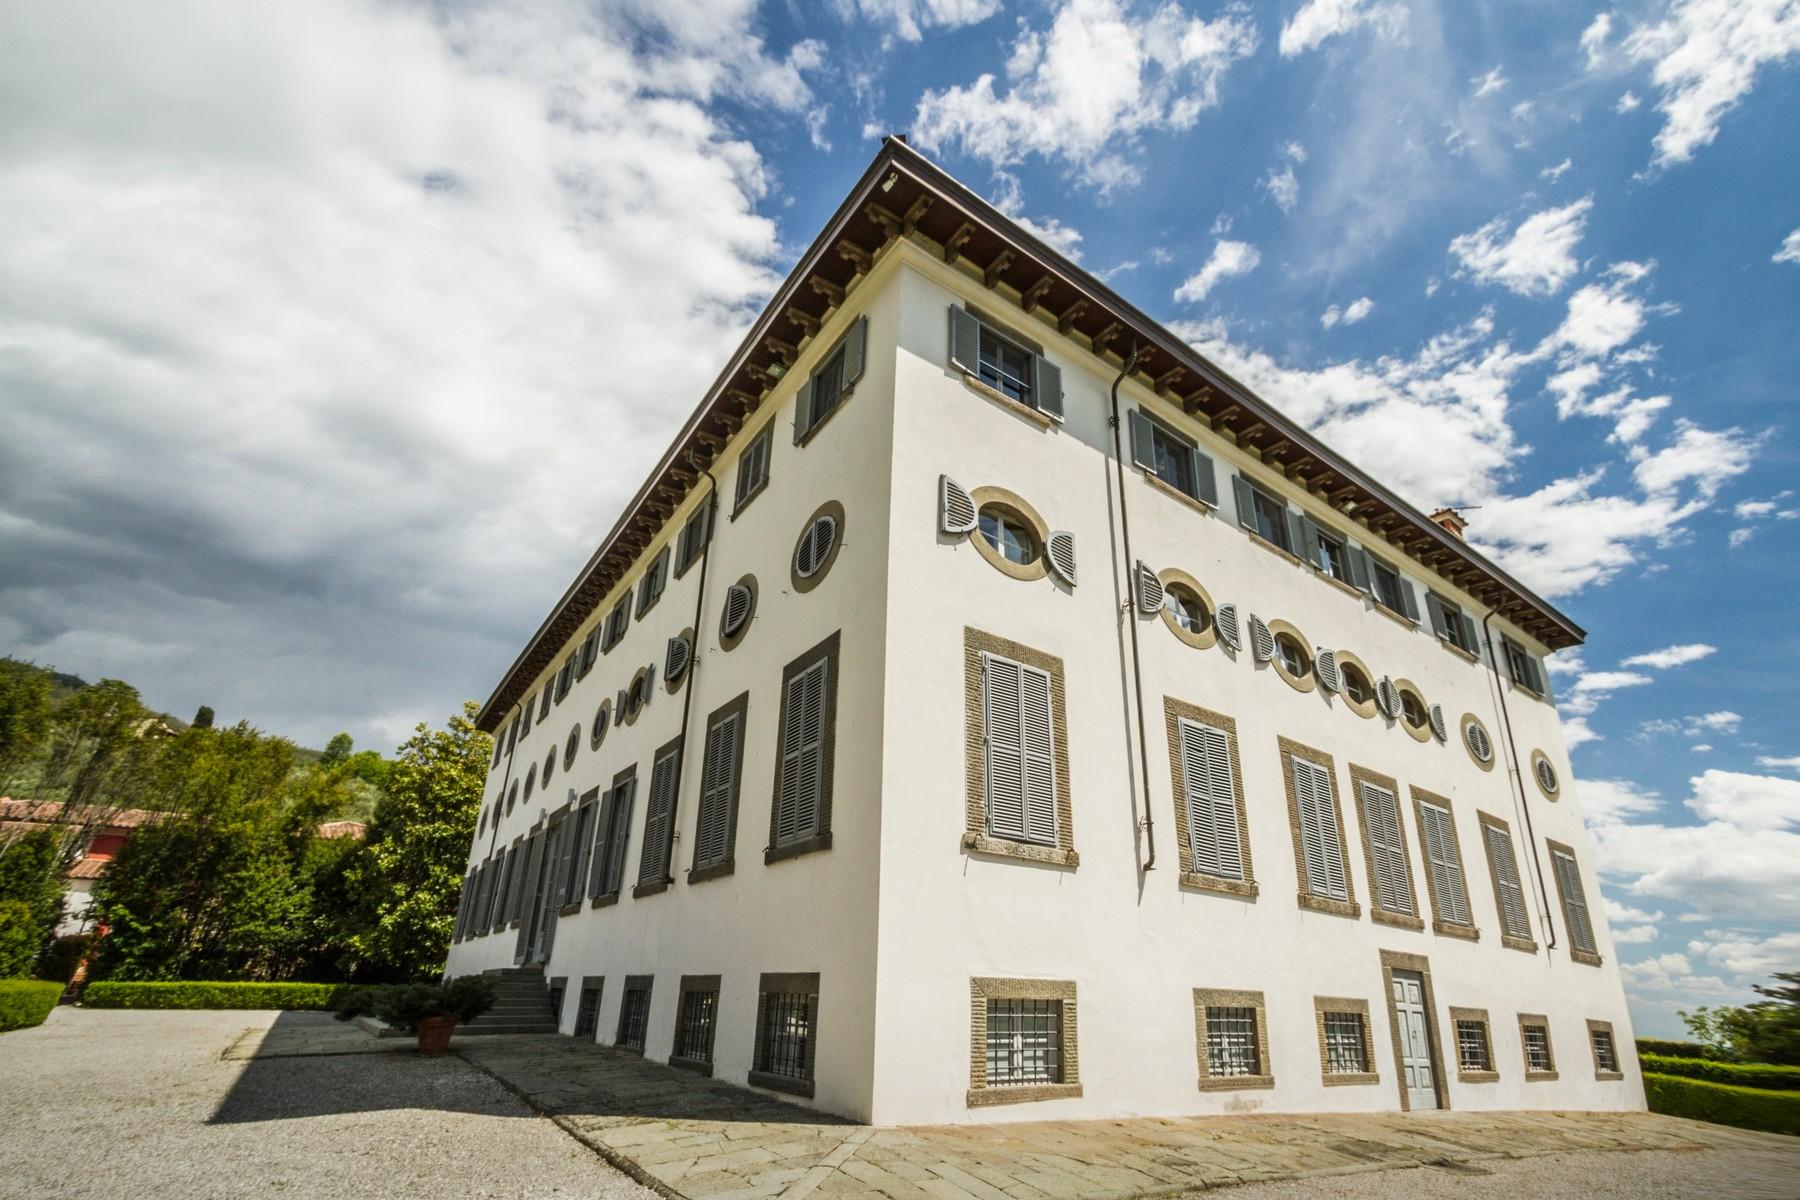 Appartamento di pregio in resort esclusivo con villa storica sulle colline di Lucca - 14